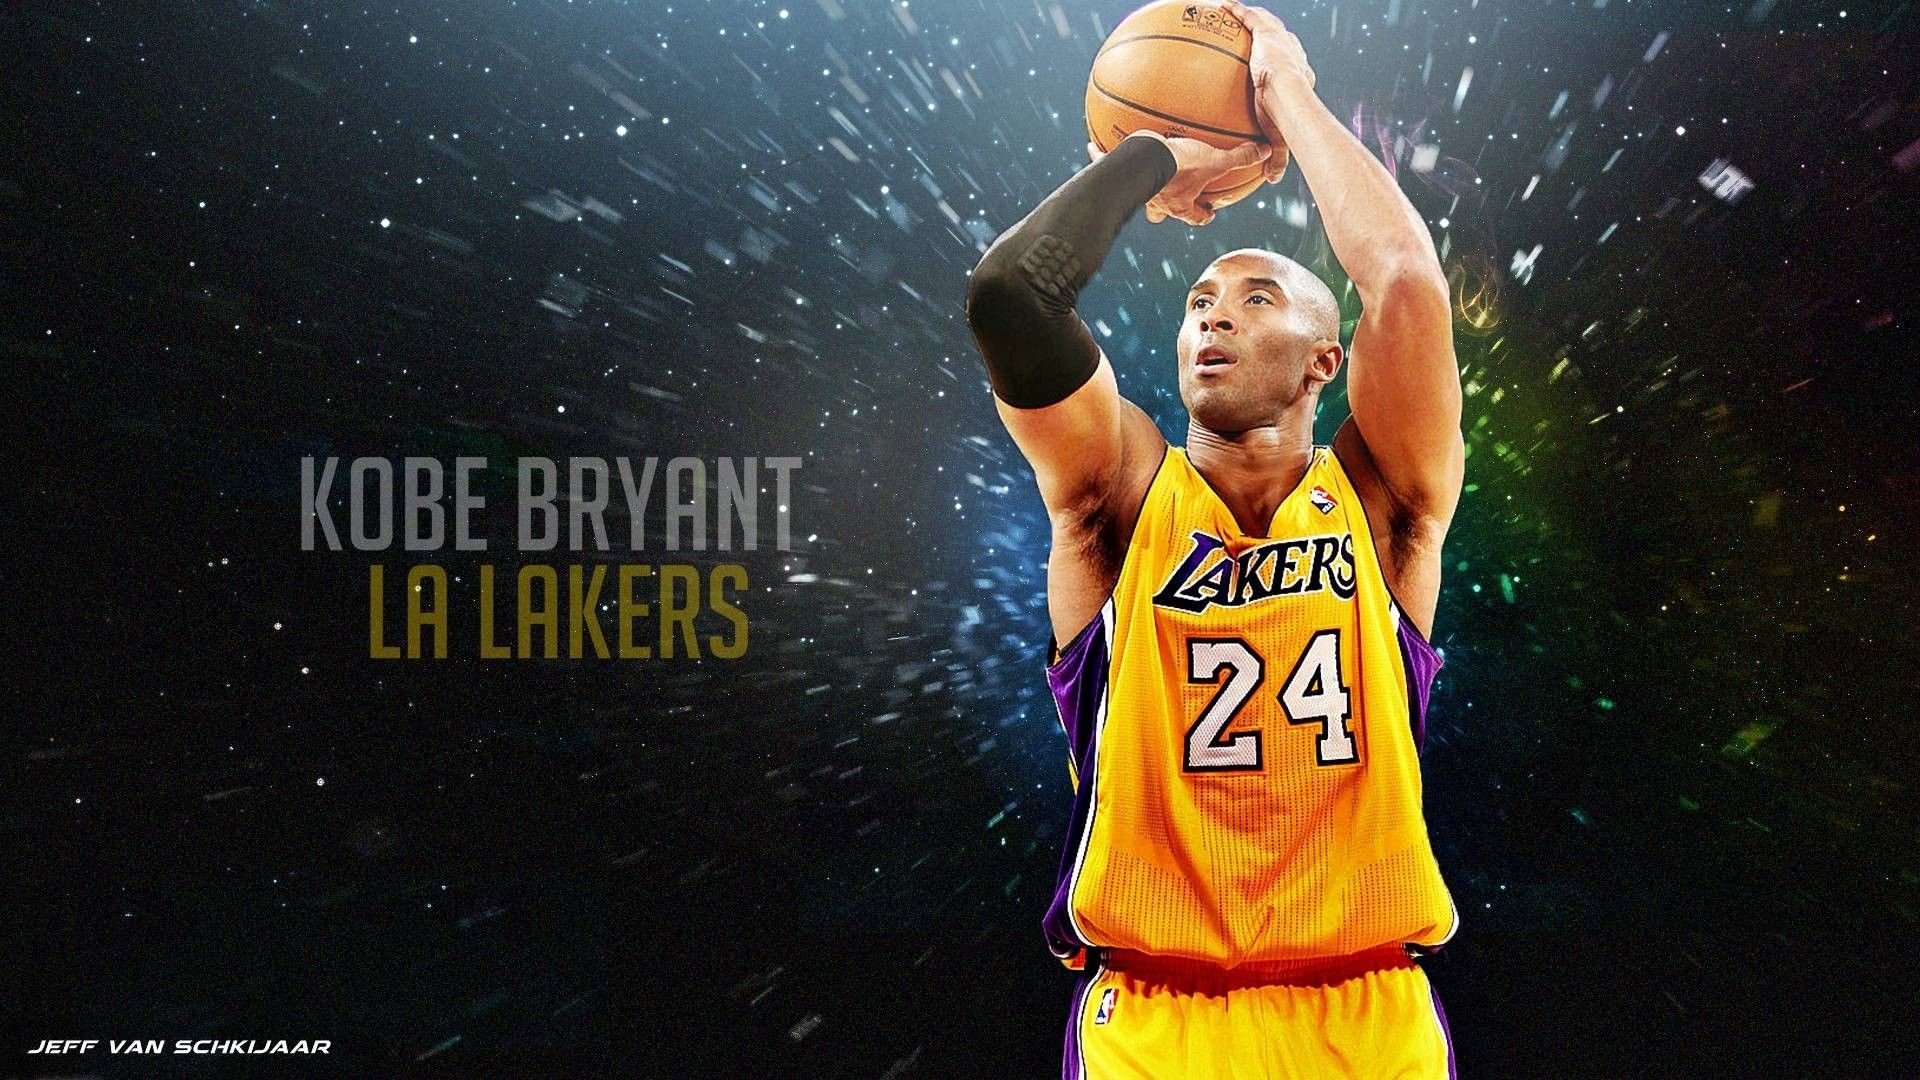 Fresh Kobe Bryant Desktop Background. Kobe bryant wallpaper, Lakers wallpaper, Kobe bryant